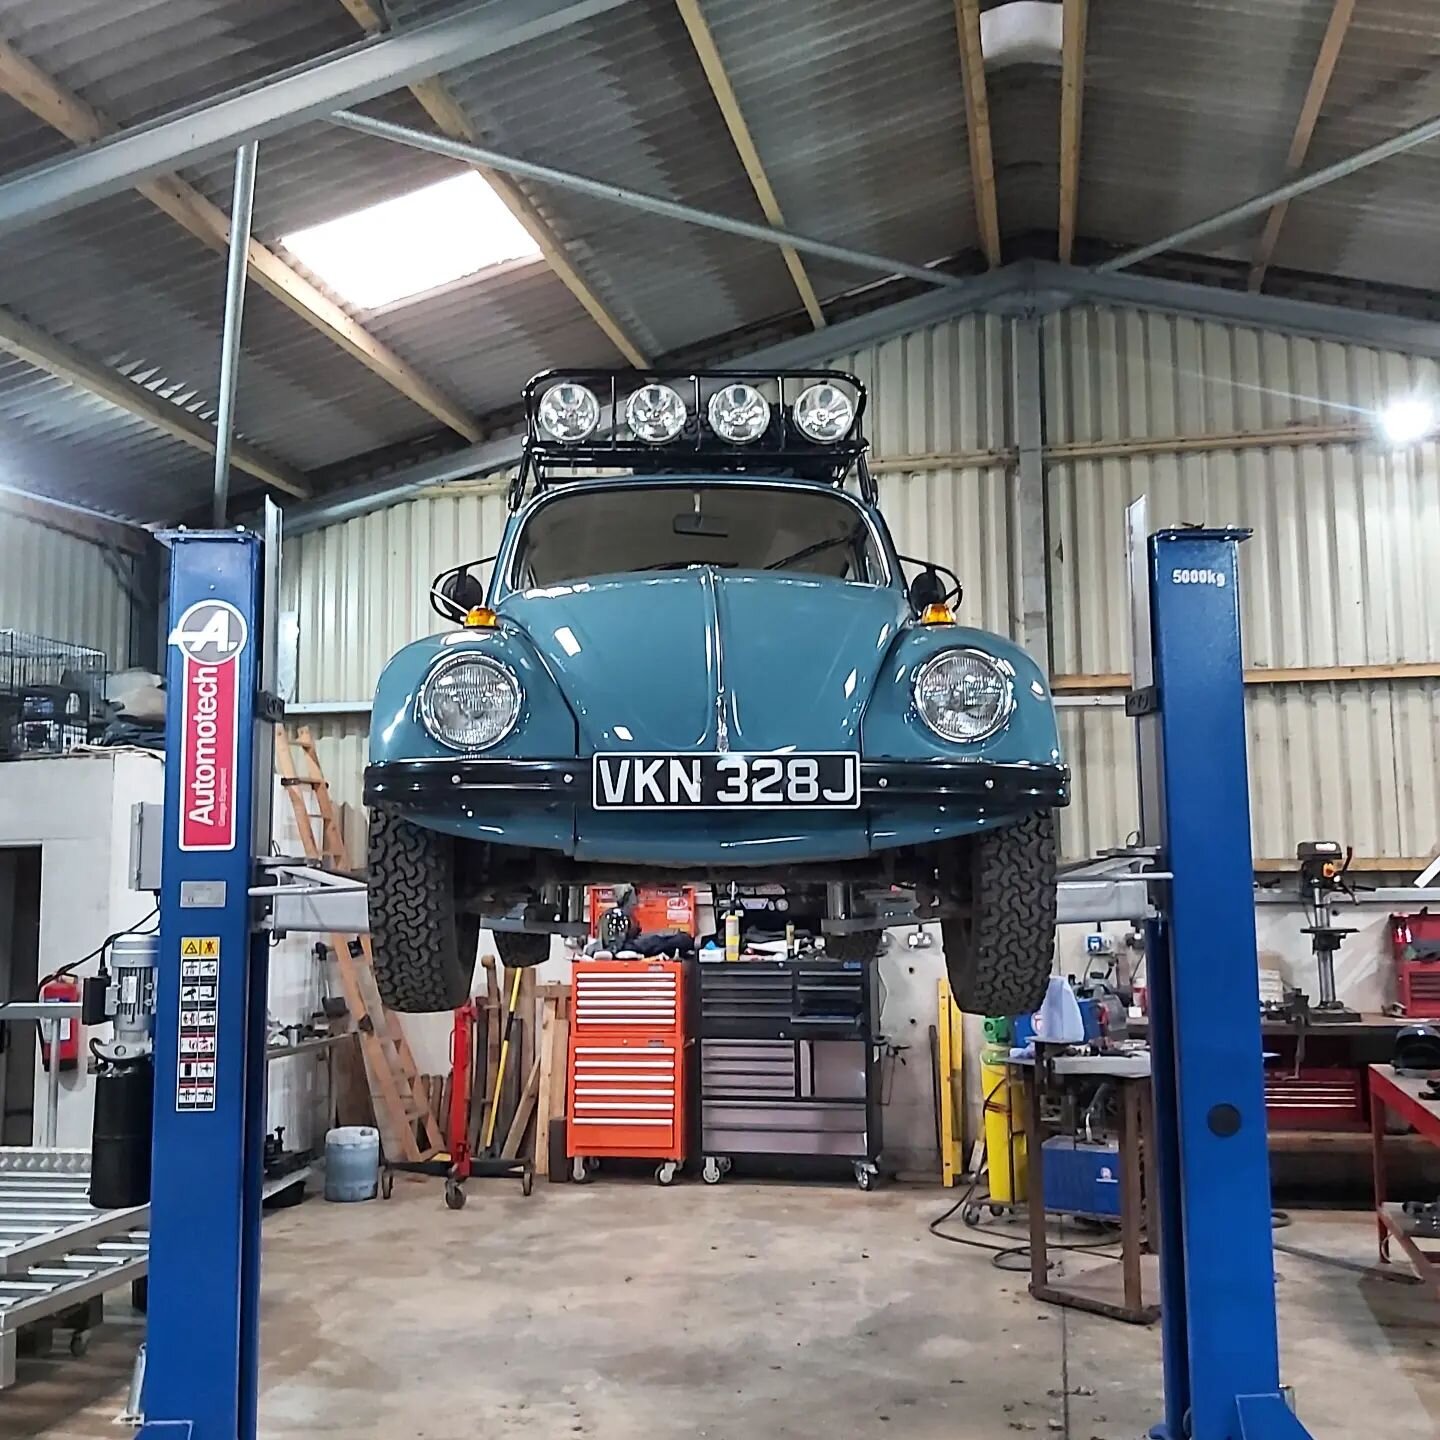 Had the beetle in the workshop this week for some pre-winter maintenance!

#vw #vwbug #vwbeetle #vwbaja #volkswagenbeetle #volkswagen #bug #beetle #class11 #bajabug #class11bug #class11beetle #offroad #offroading #offroadfab #overland #overlander #ov